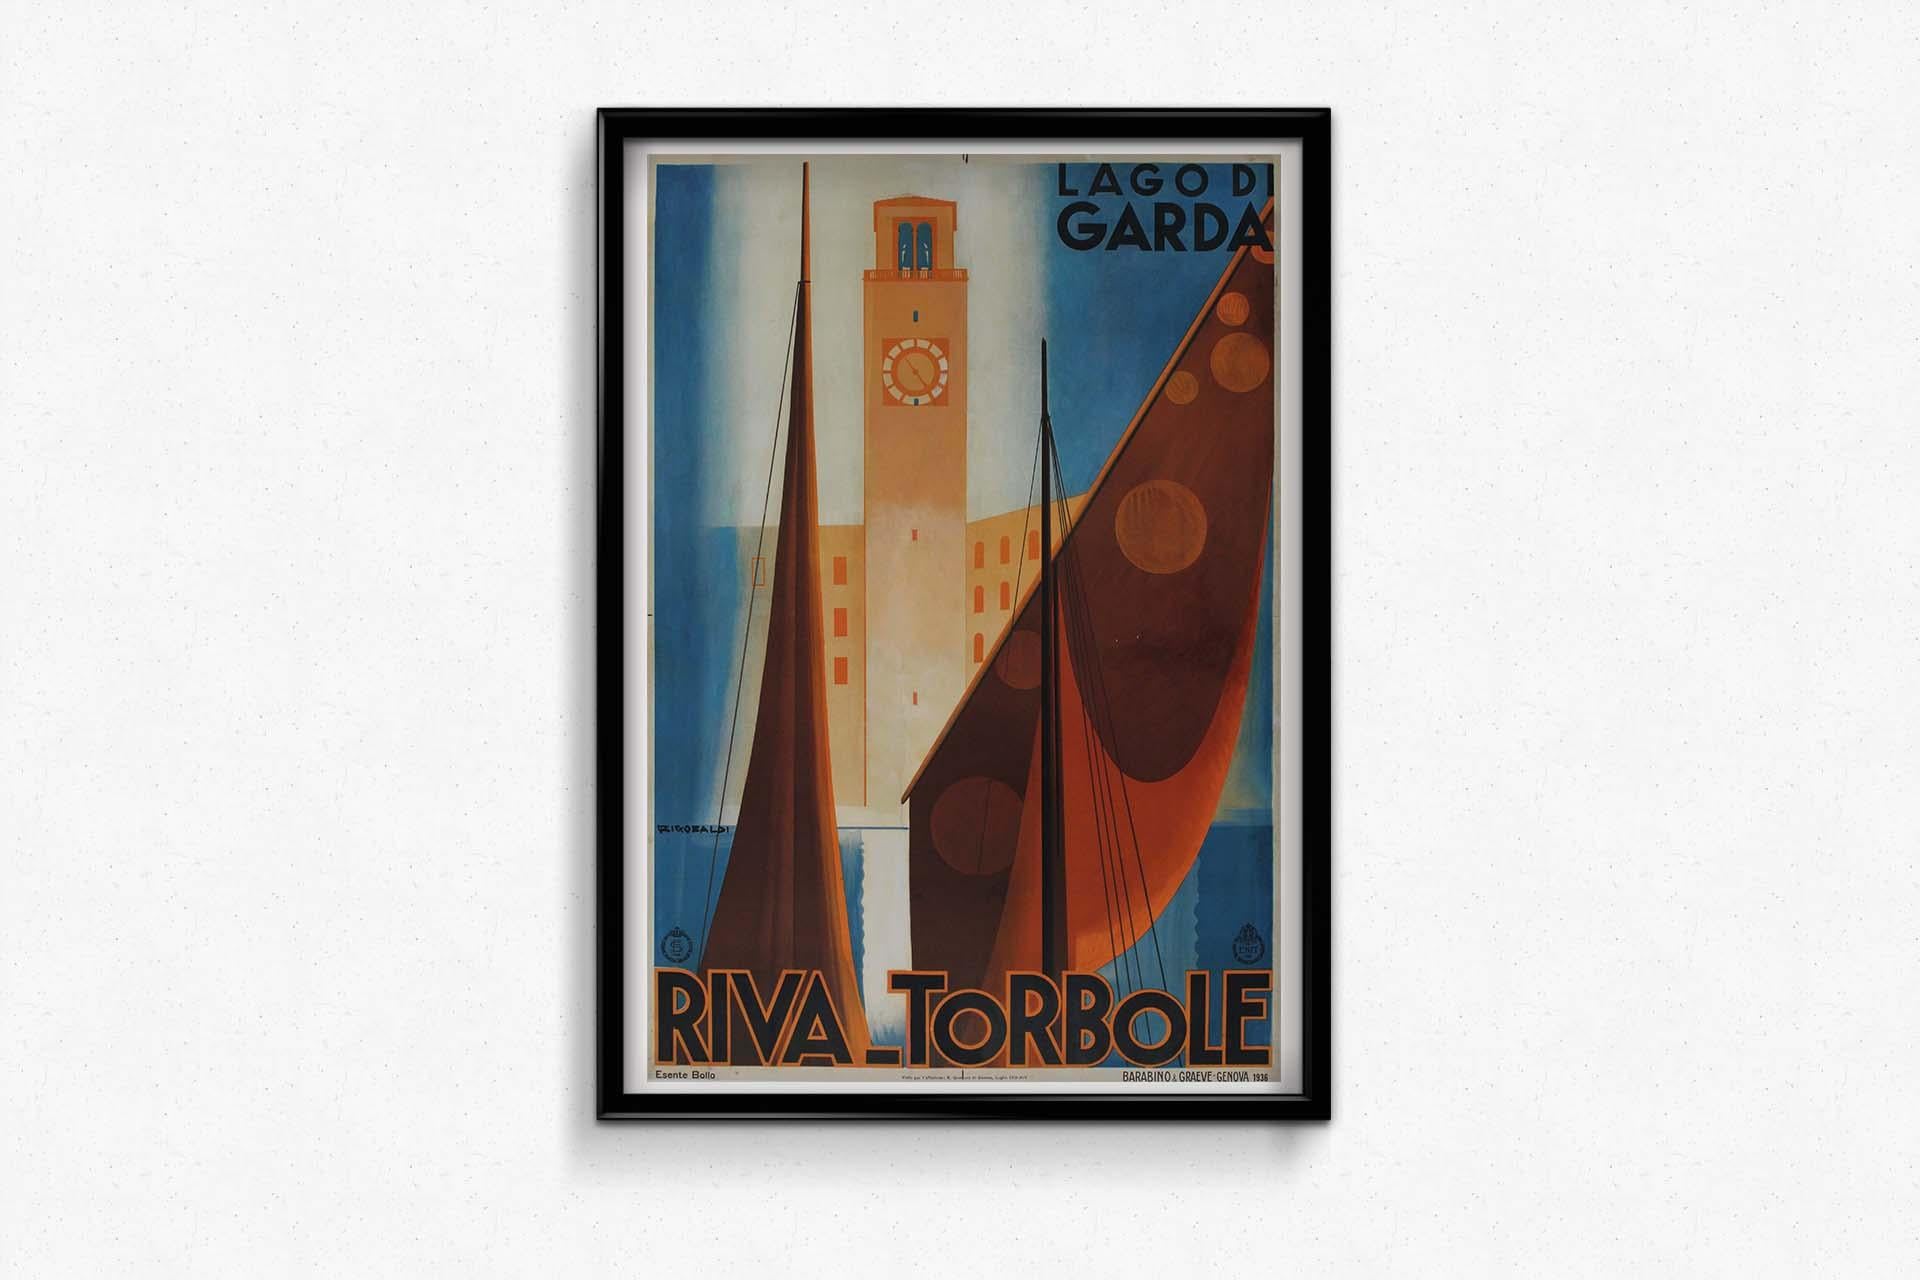 Riccobaldi's 1936 travel poster for 'Riva Torbole Lago di Garda' - Italy For Sale 1